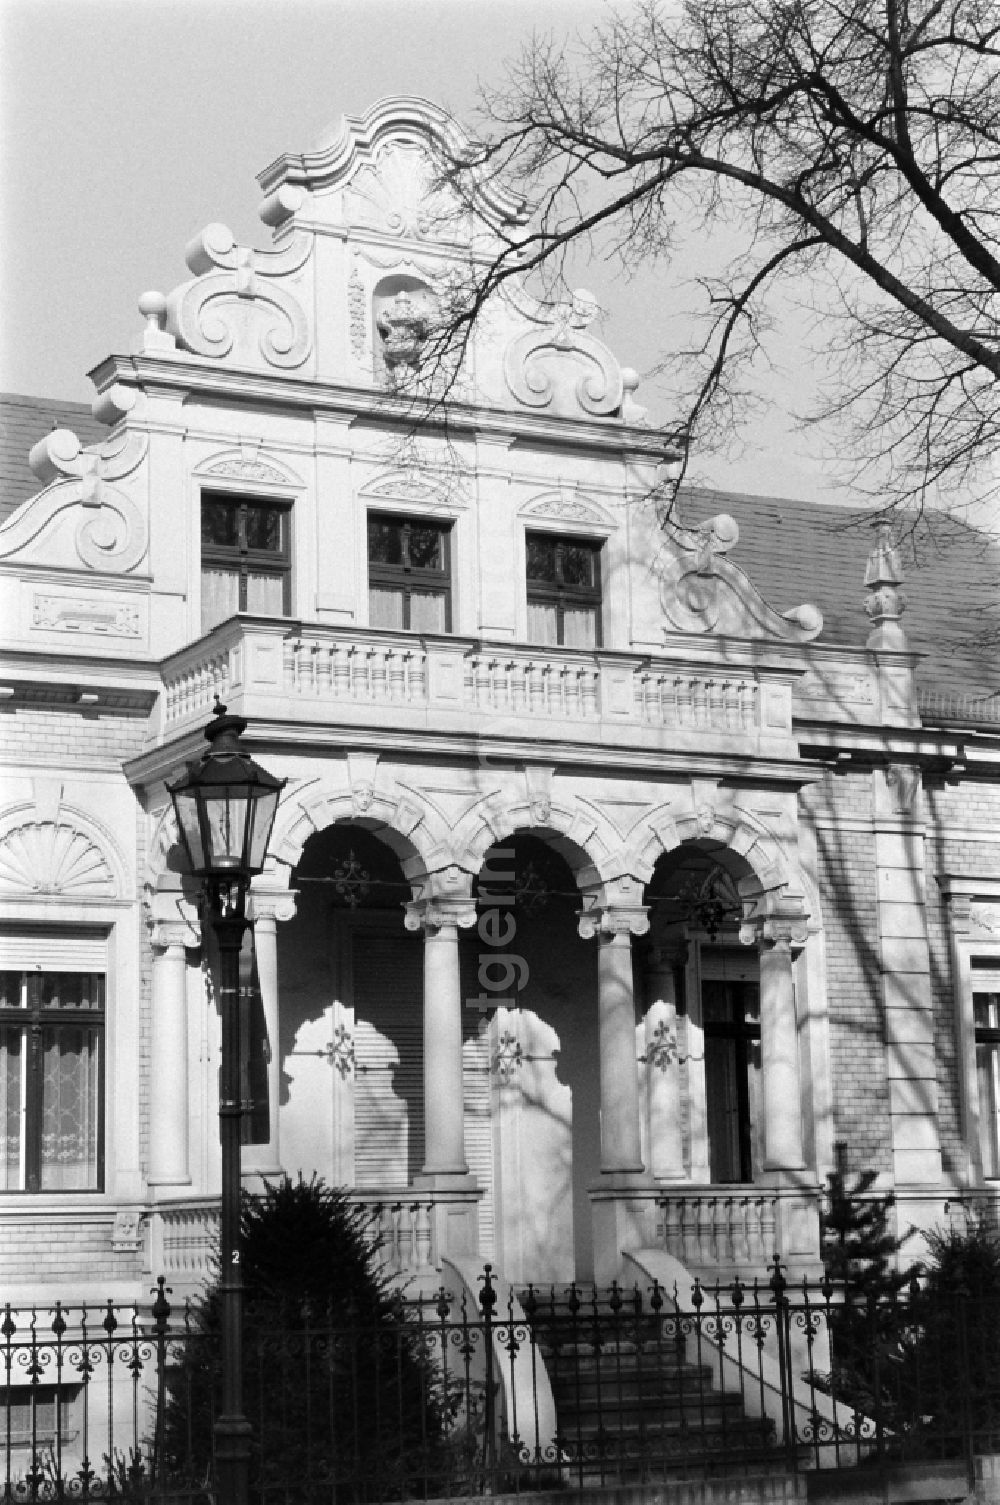 GDR image archive: Berlin - Residential house in Alt-Marienfelde in Berlin. The farmhouse was built in 1899-19